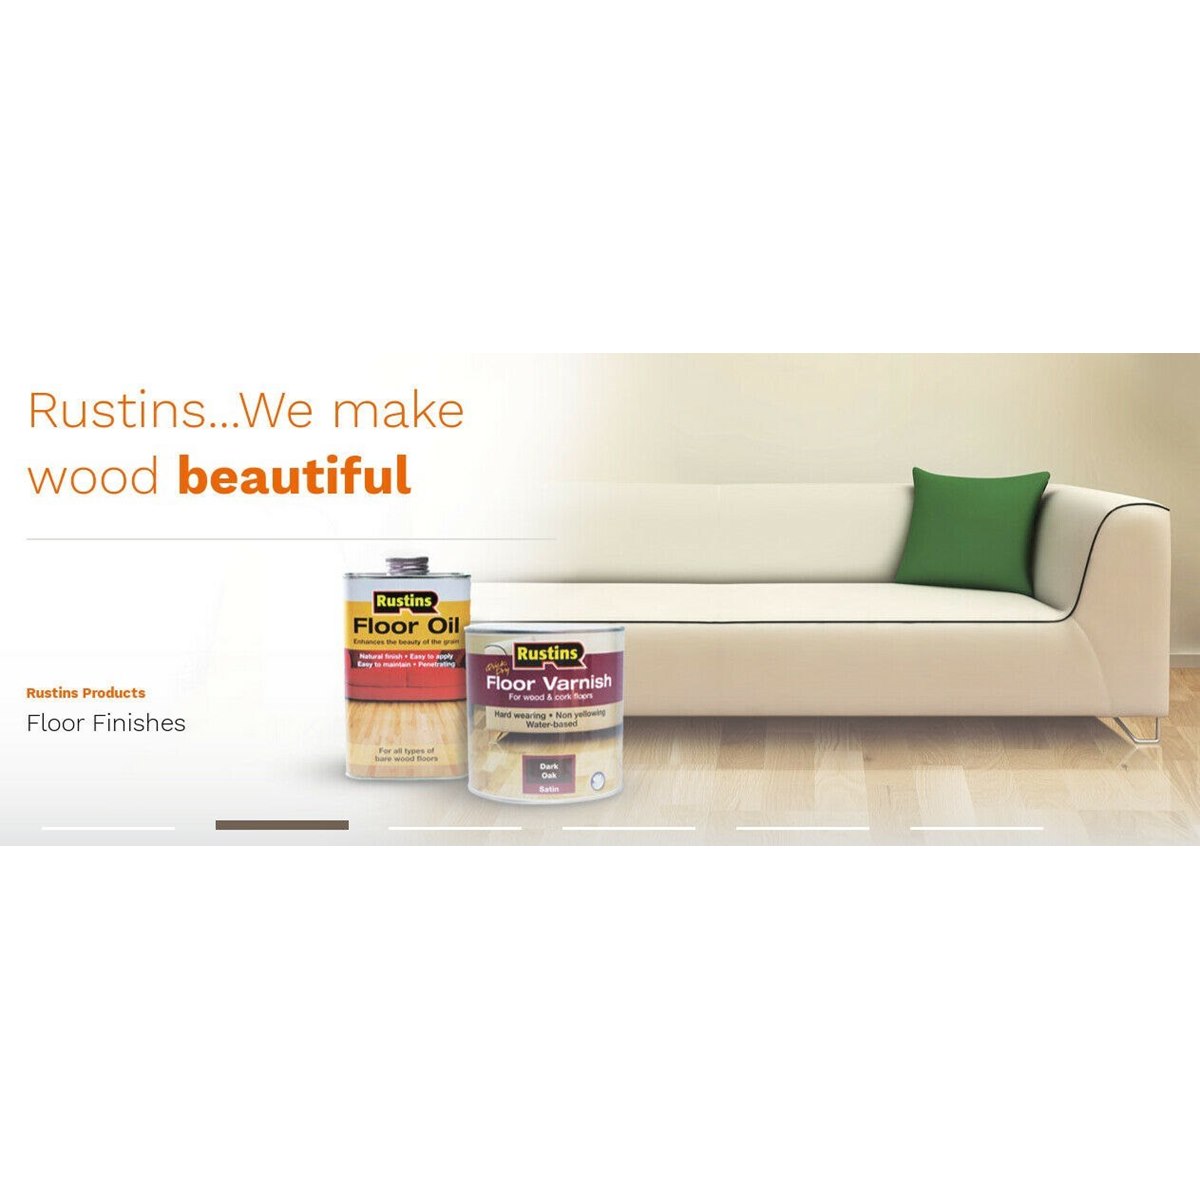 Where to buy Rustins Wood Floor Oil